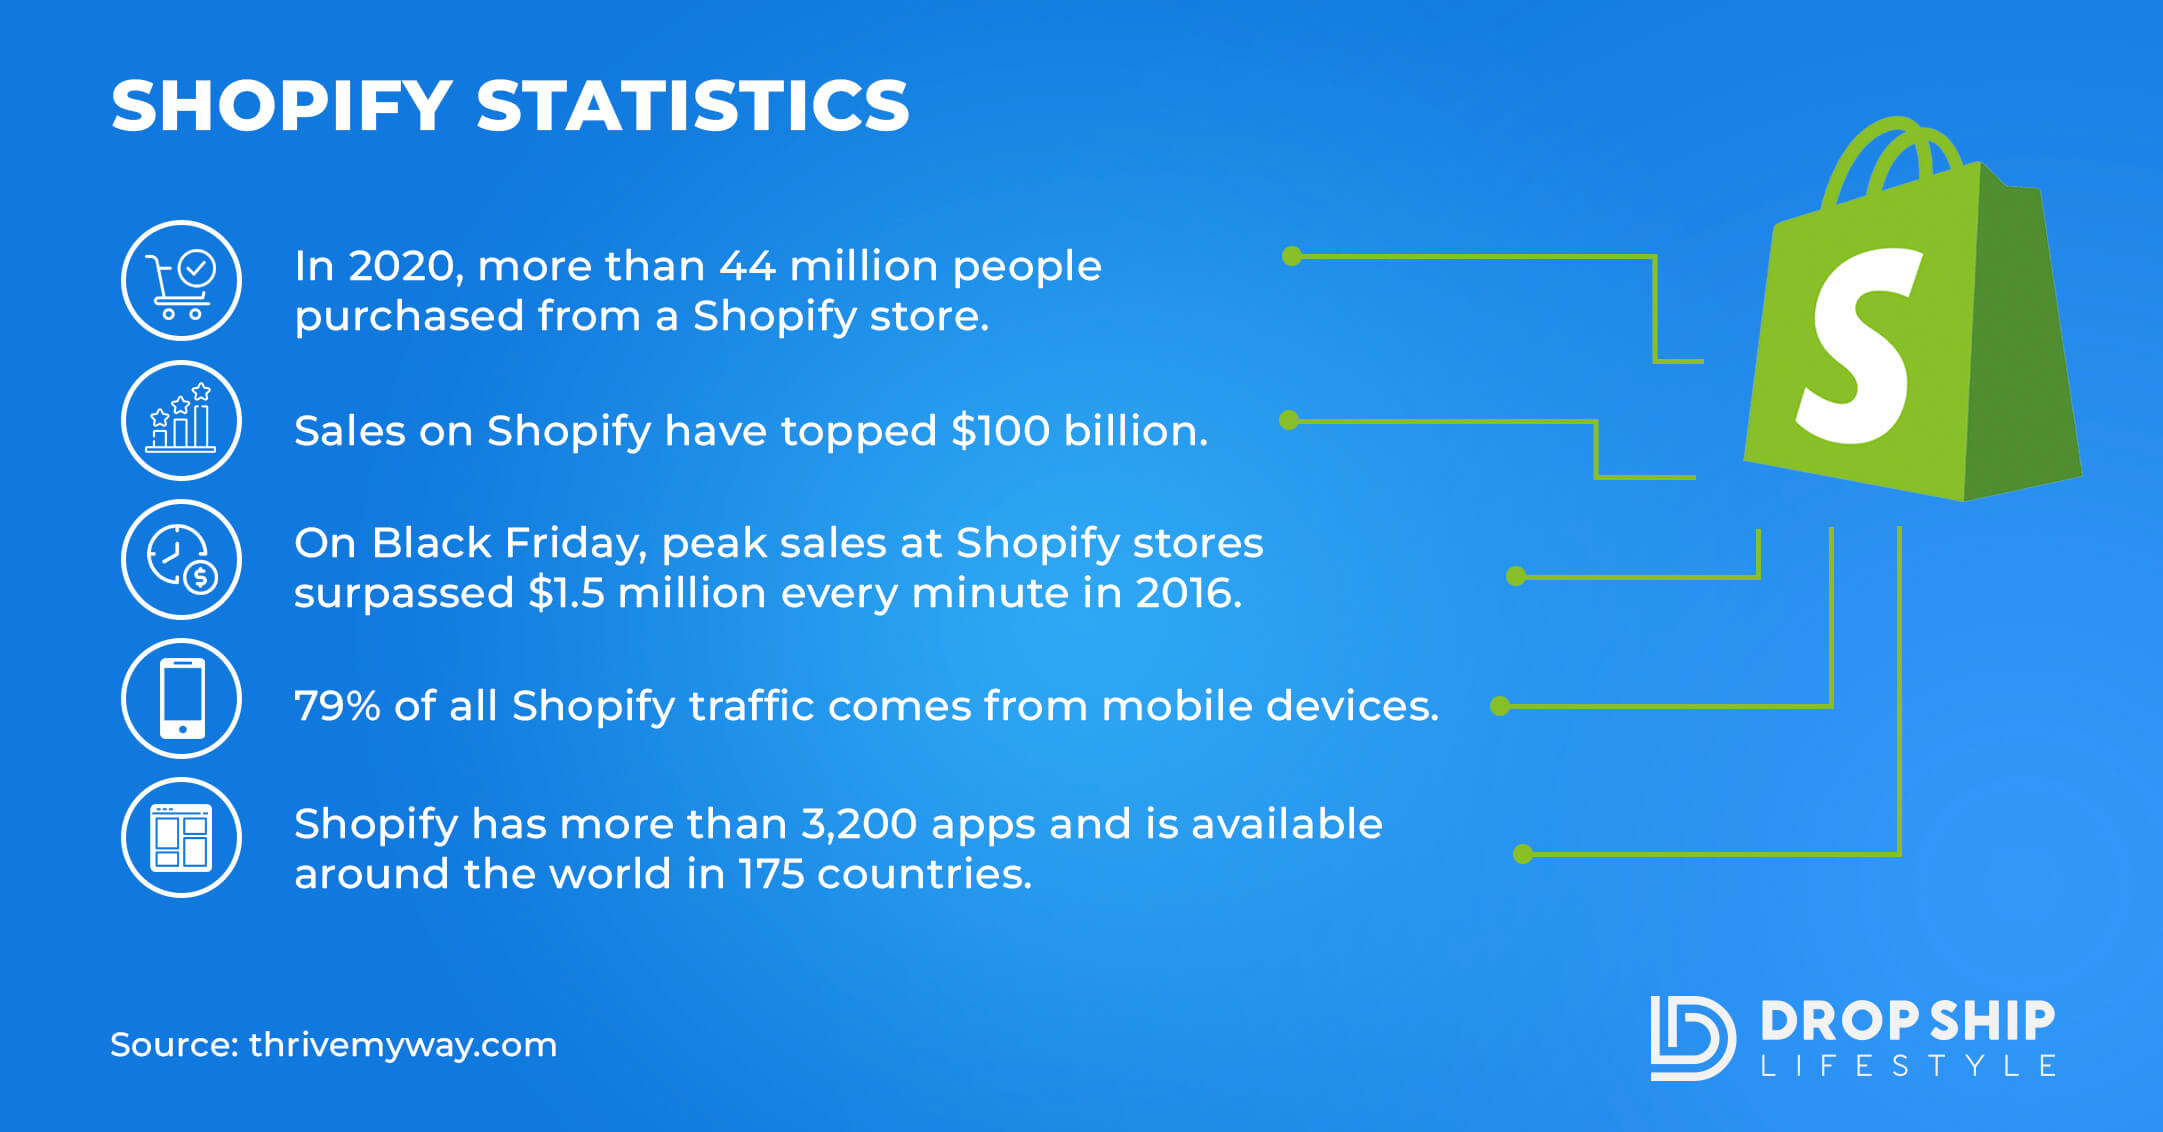 shopify statistics